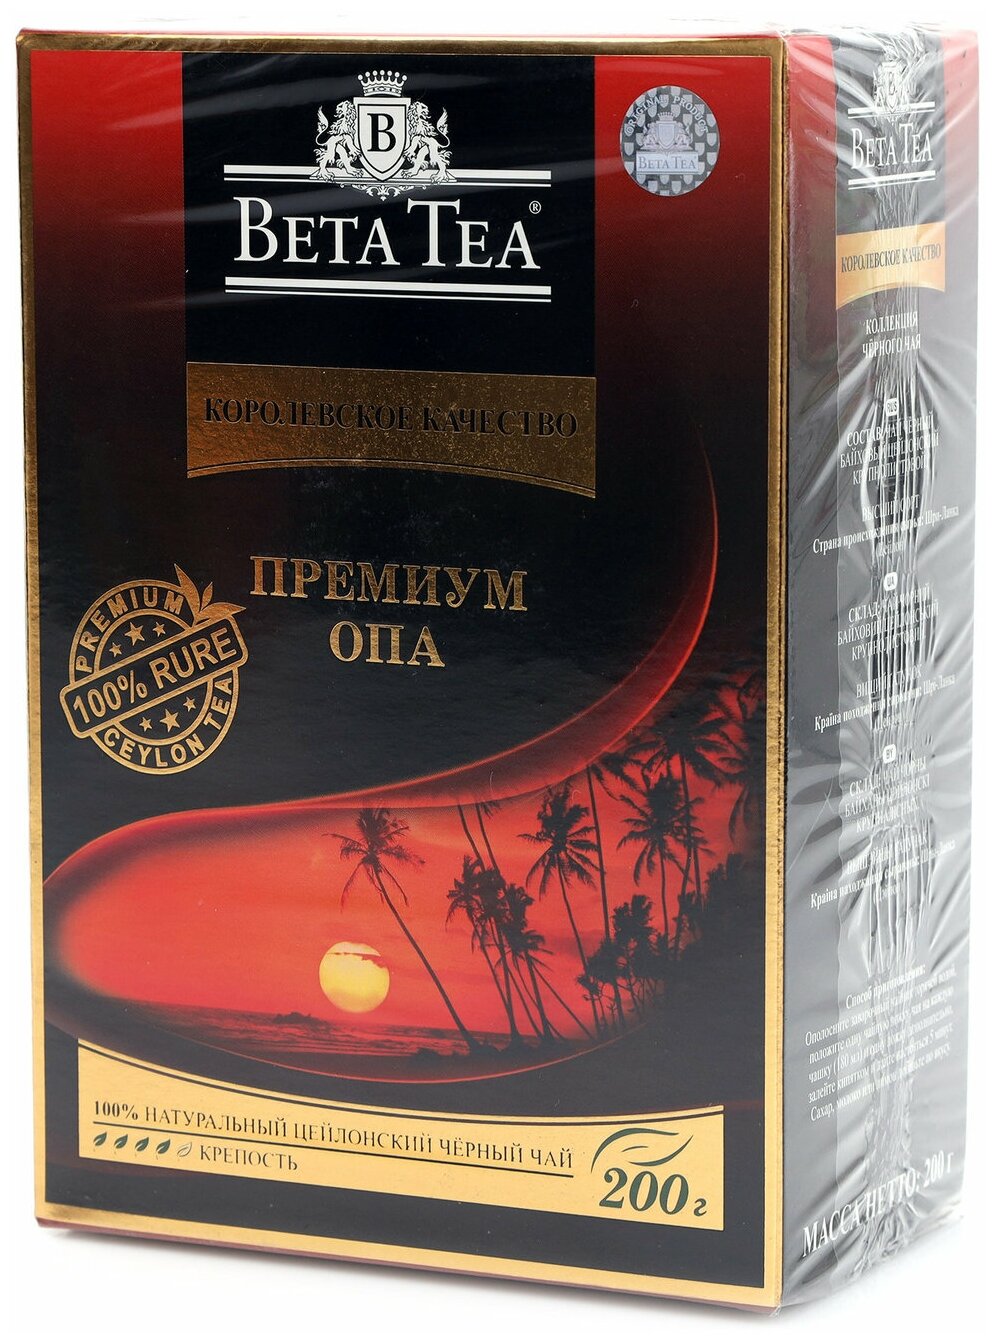 Чай чёрный байховый цейлонский Beta Tea Королевское качество Премиум ОПА 200г картон - фотография № 7